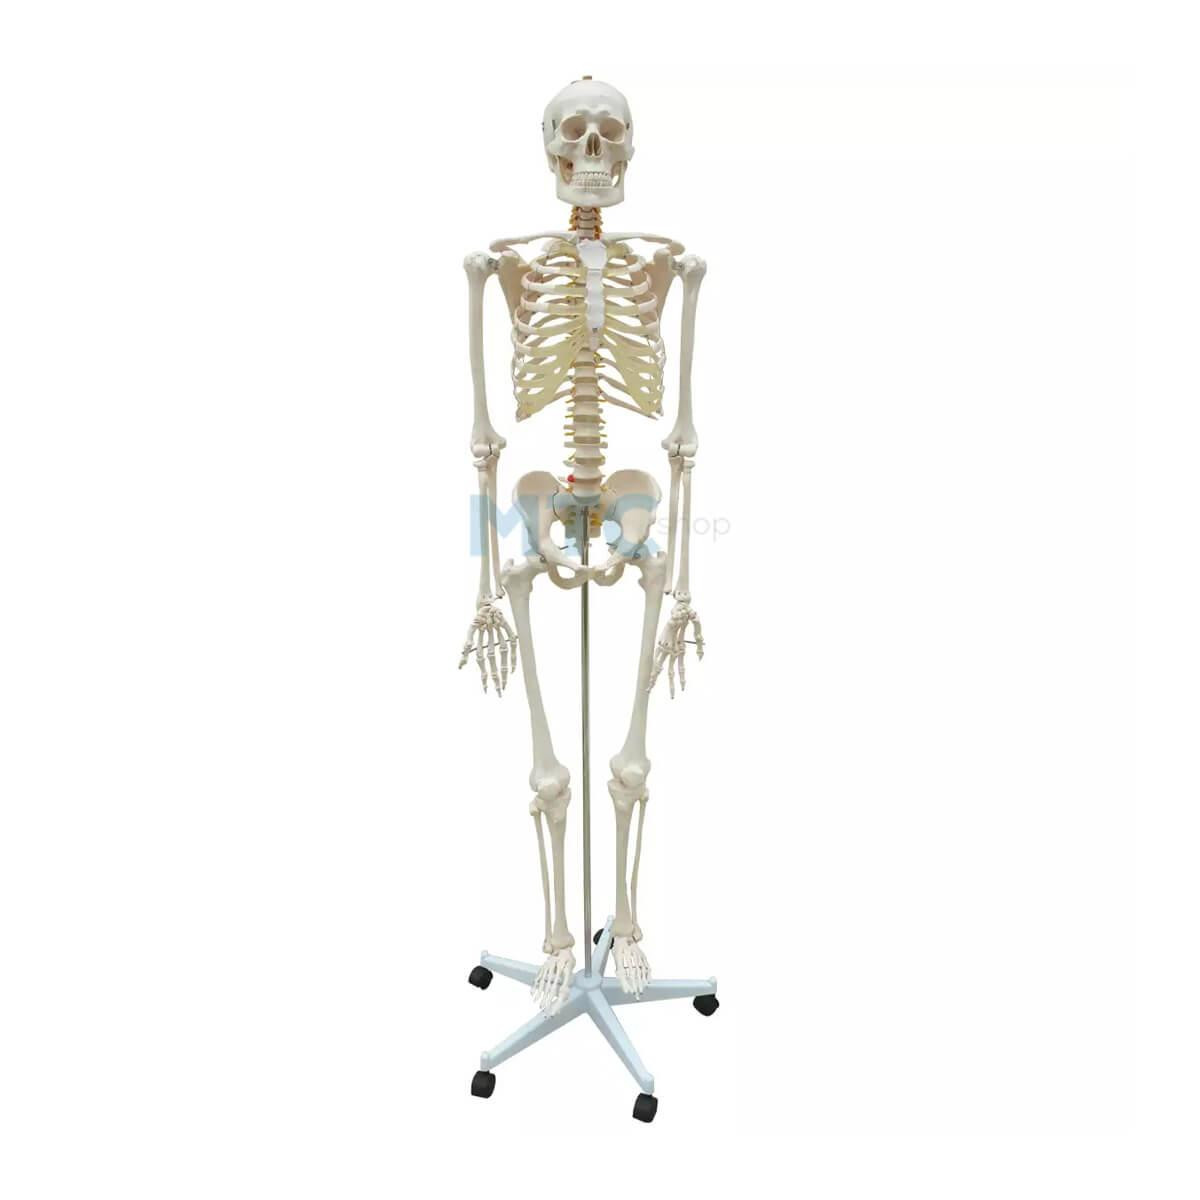 Esqueleto Anatômico com Tamanho Natural - 1,70cm